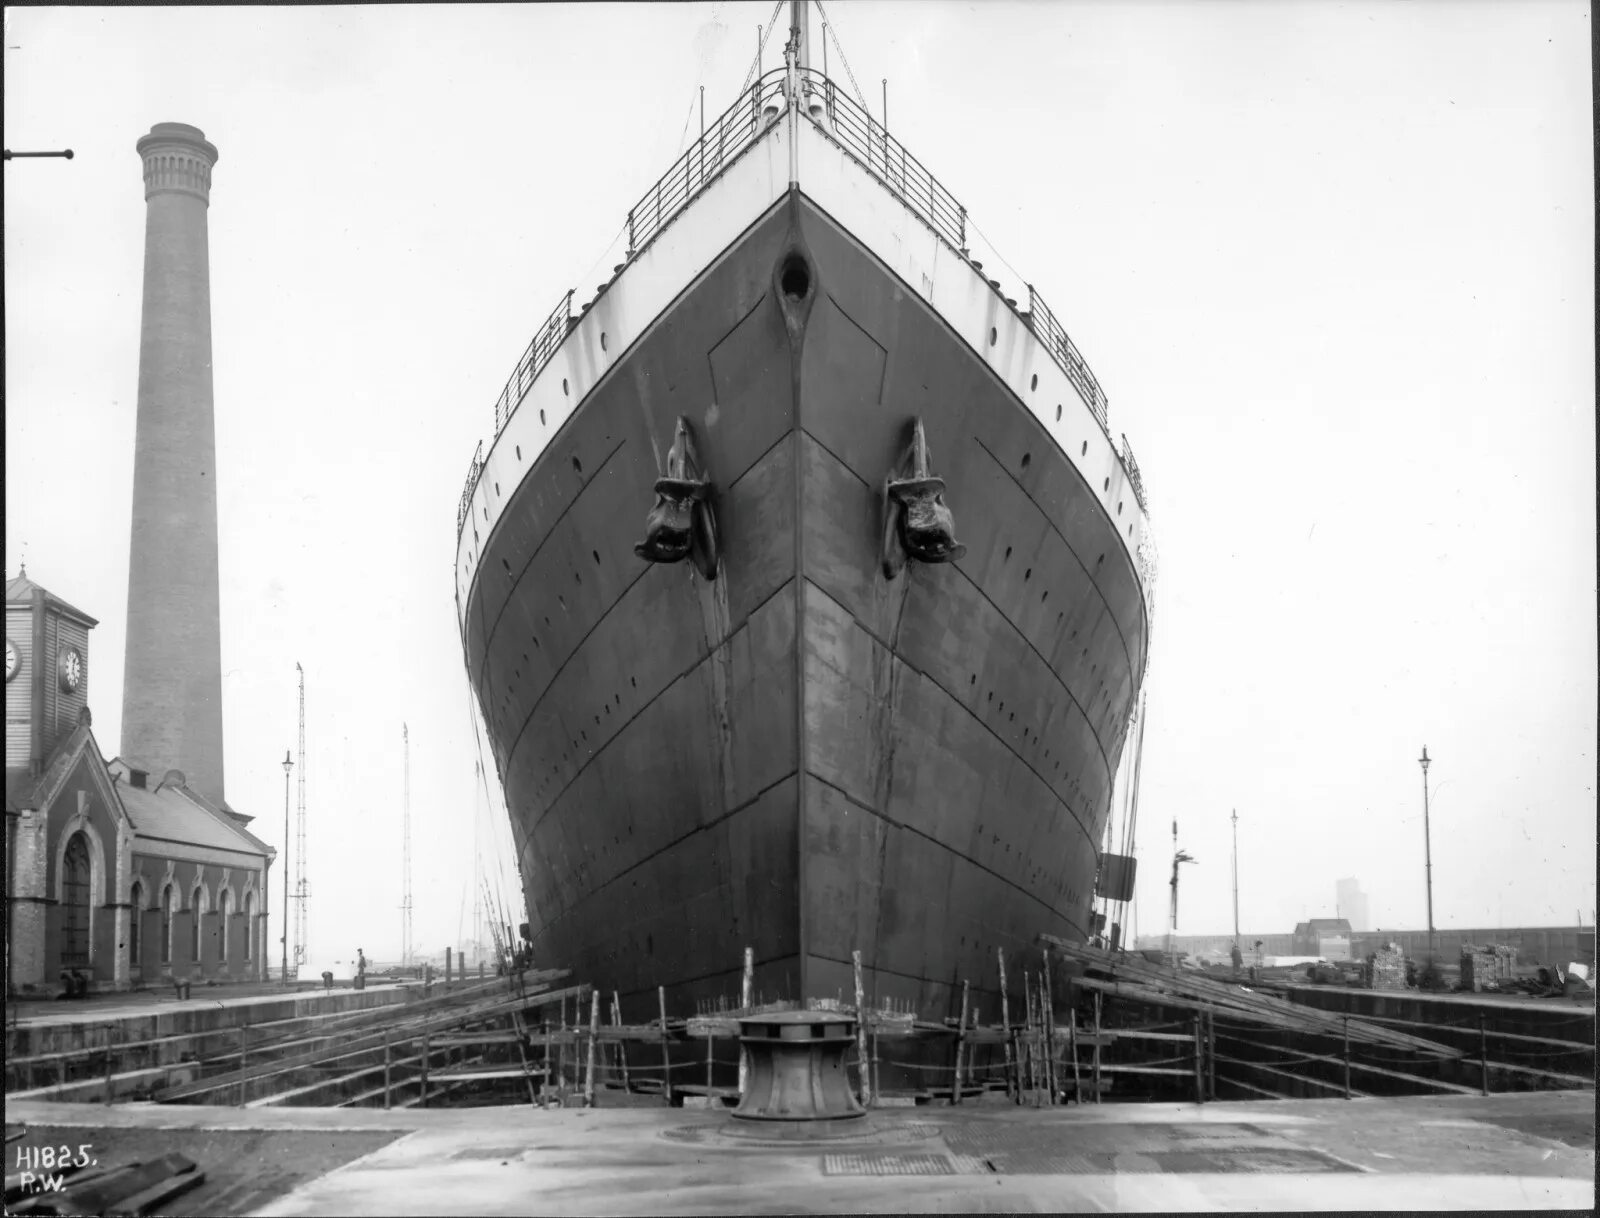 Какой самый известный корабль. Олимпик 1912. Титаник фото корабля 1912. Фото Титаника 1912 года. Титаник лайнер фото 1912.